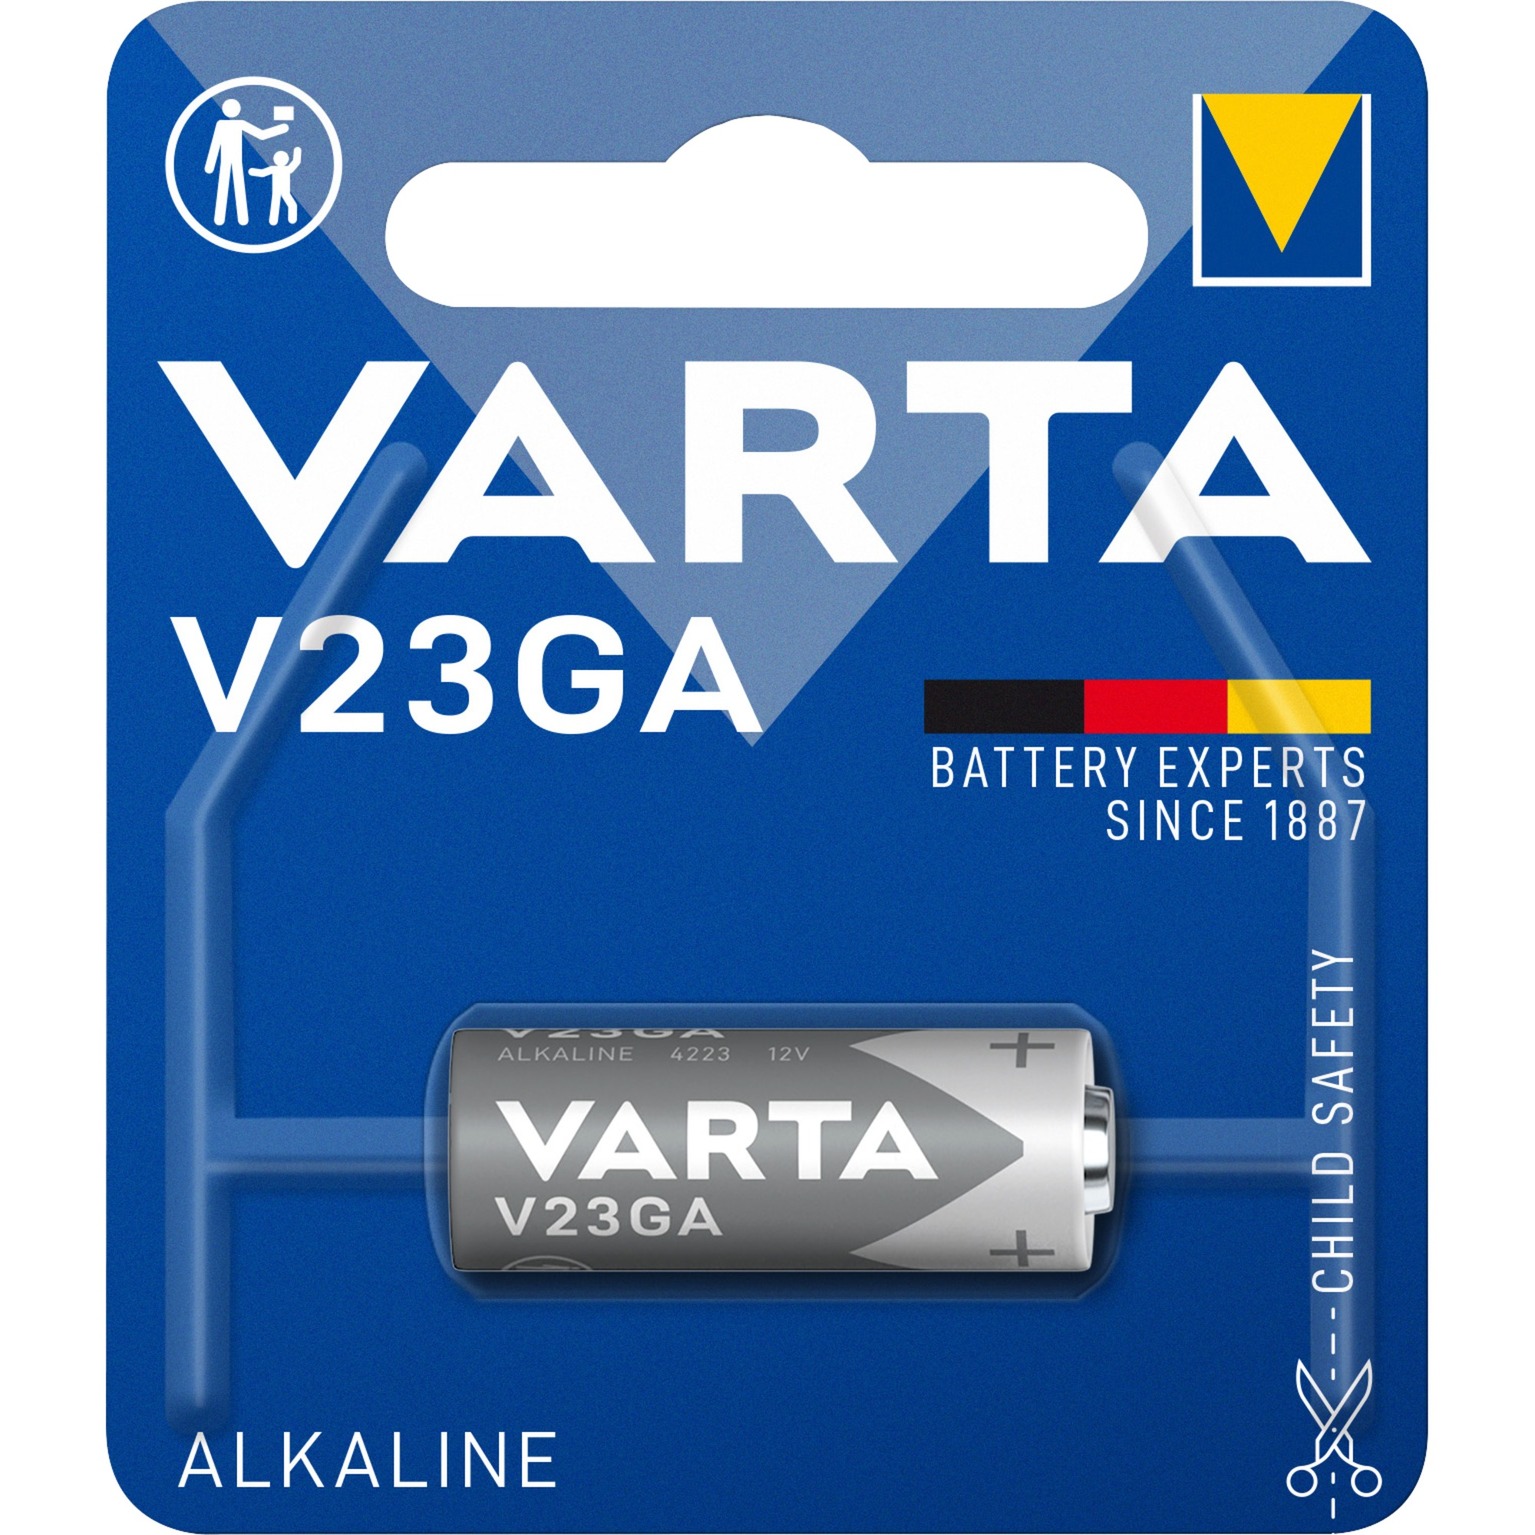 Image of Alternate - ALKALINE Special V23GA, Batterie online einkaufen bei Alternate